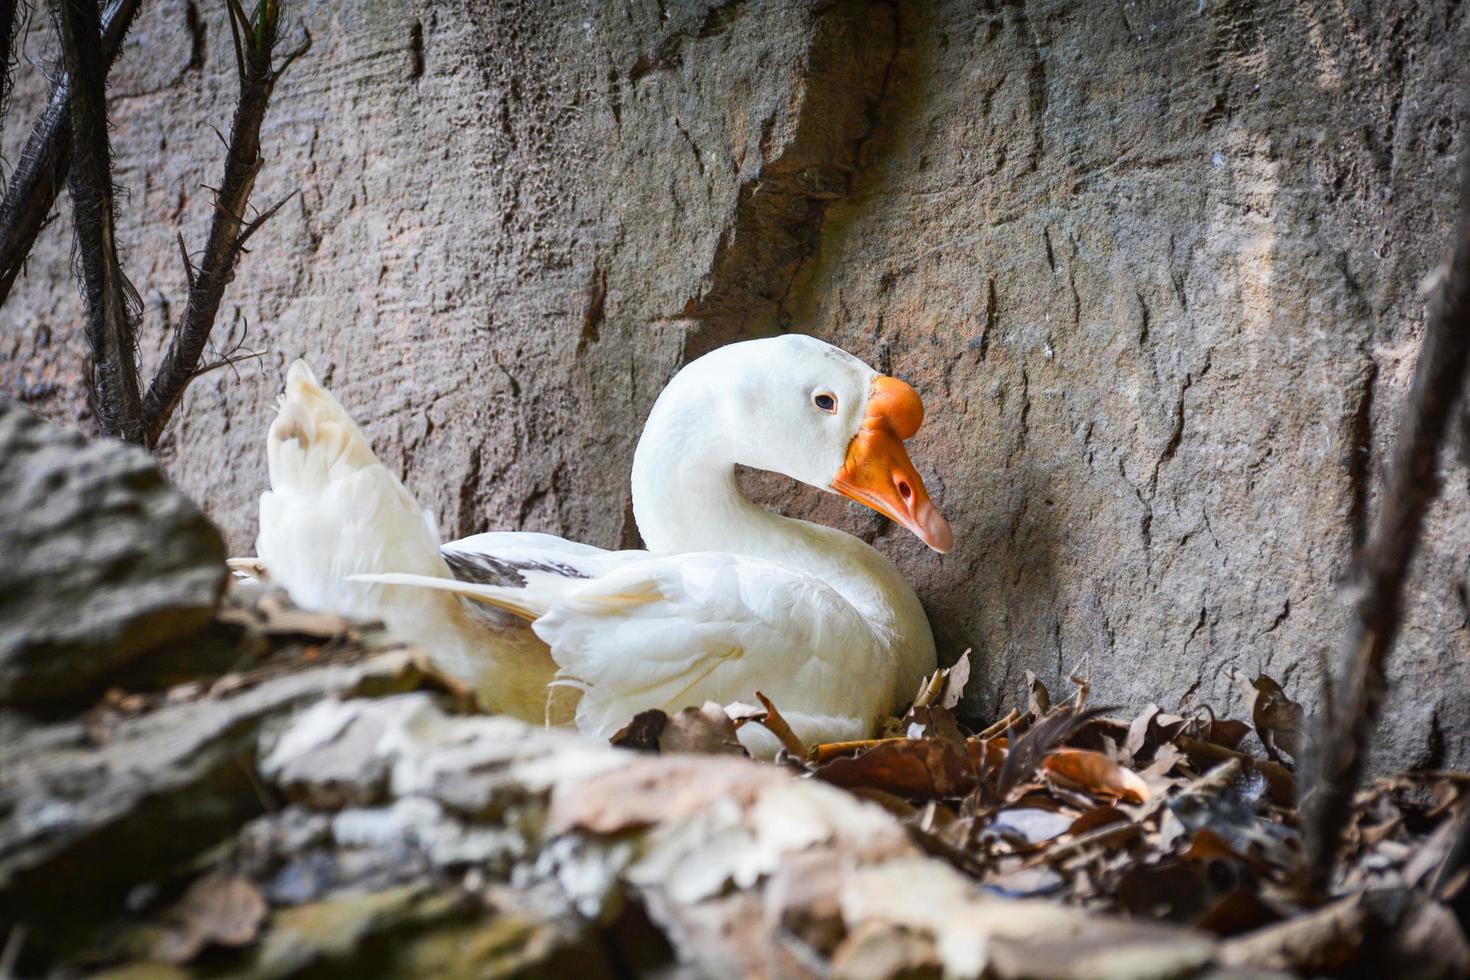 pato ganso branco chocando ovos no ninho no chão com folhas secas foto